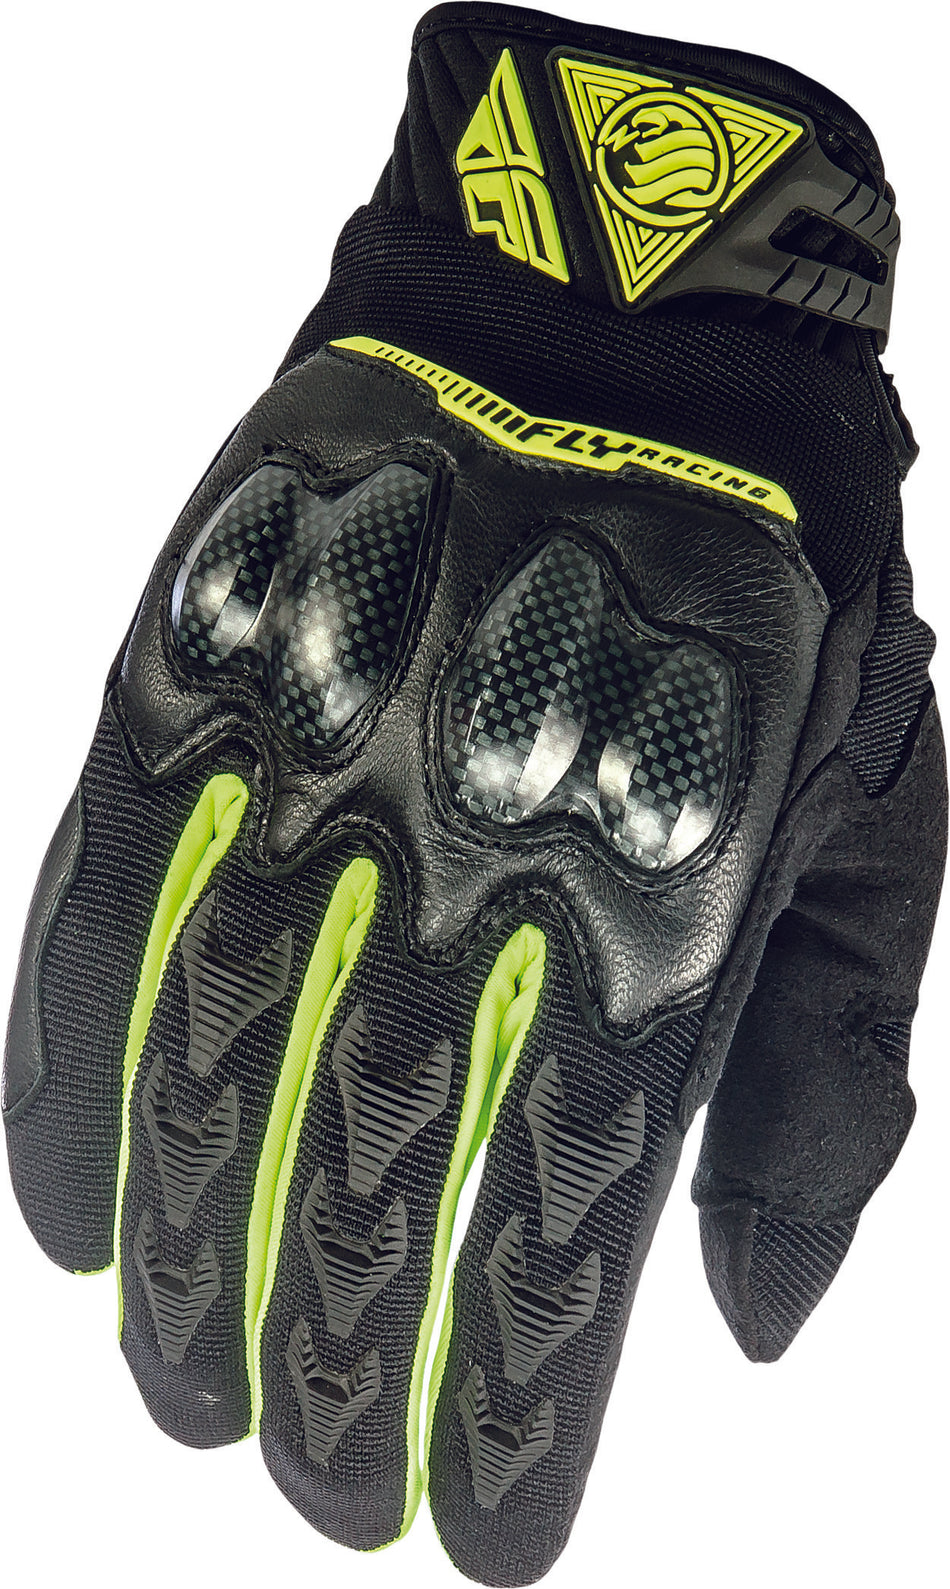 FLY RACING Patrol Xc Gloves Black/Hi-Vis Sz 12 369-06312